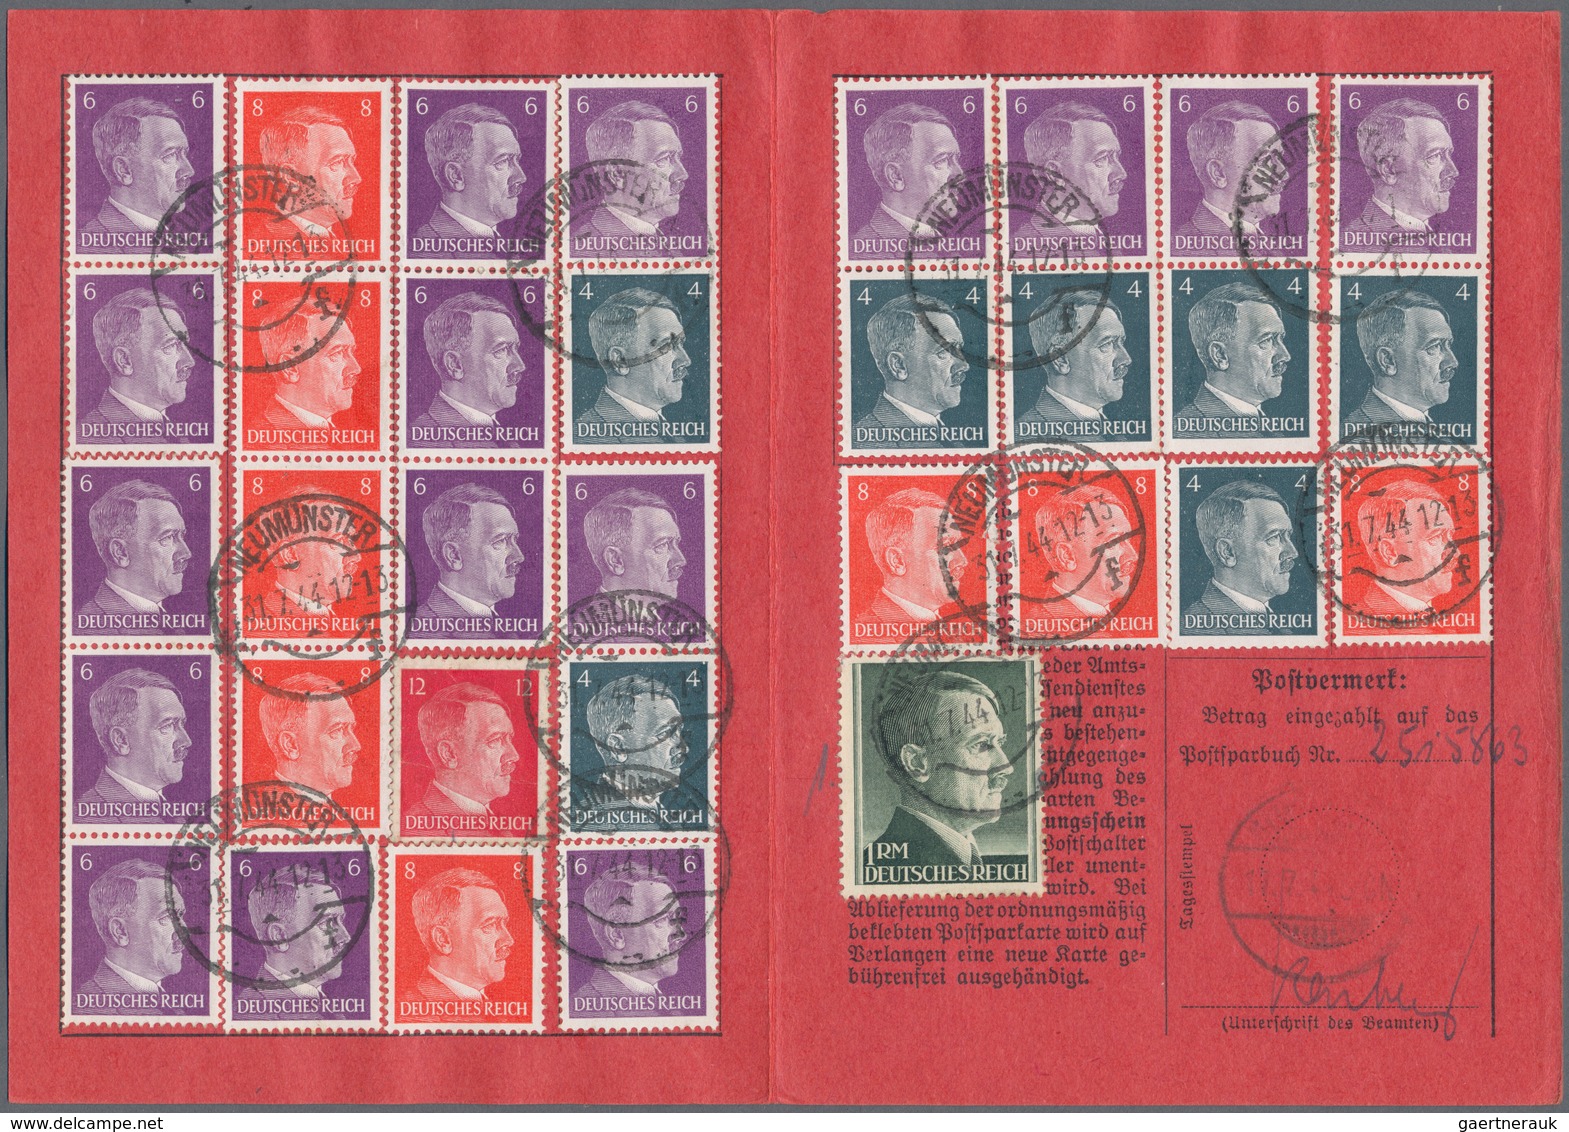 Deutsches Reich - 3. Reich: 1944/45, drei mit Hindenburg und Hitlermarken voll besparte Postsparkart